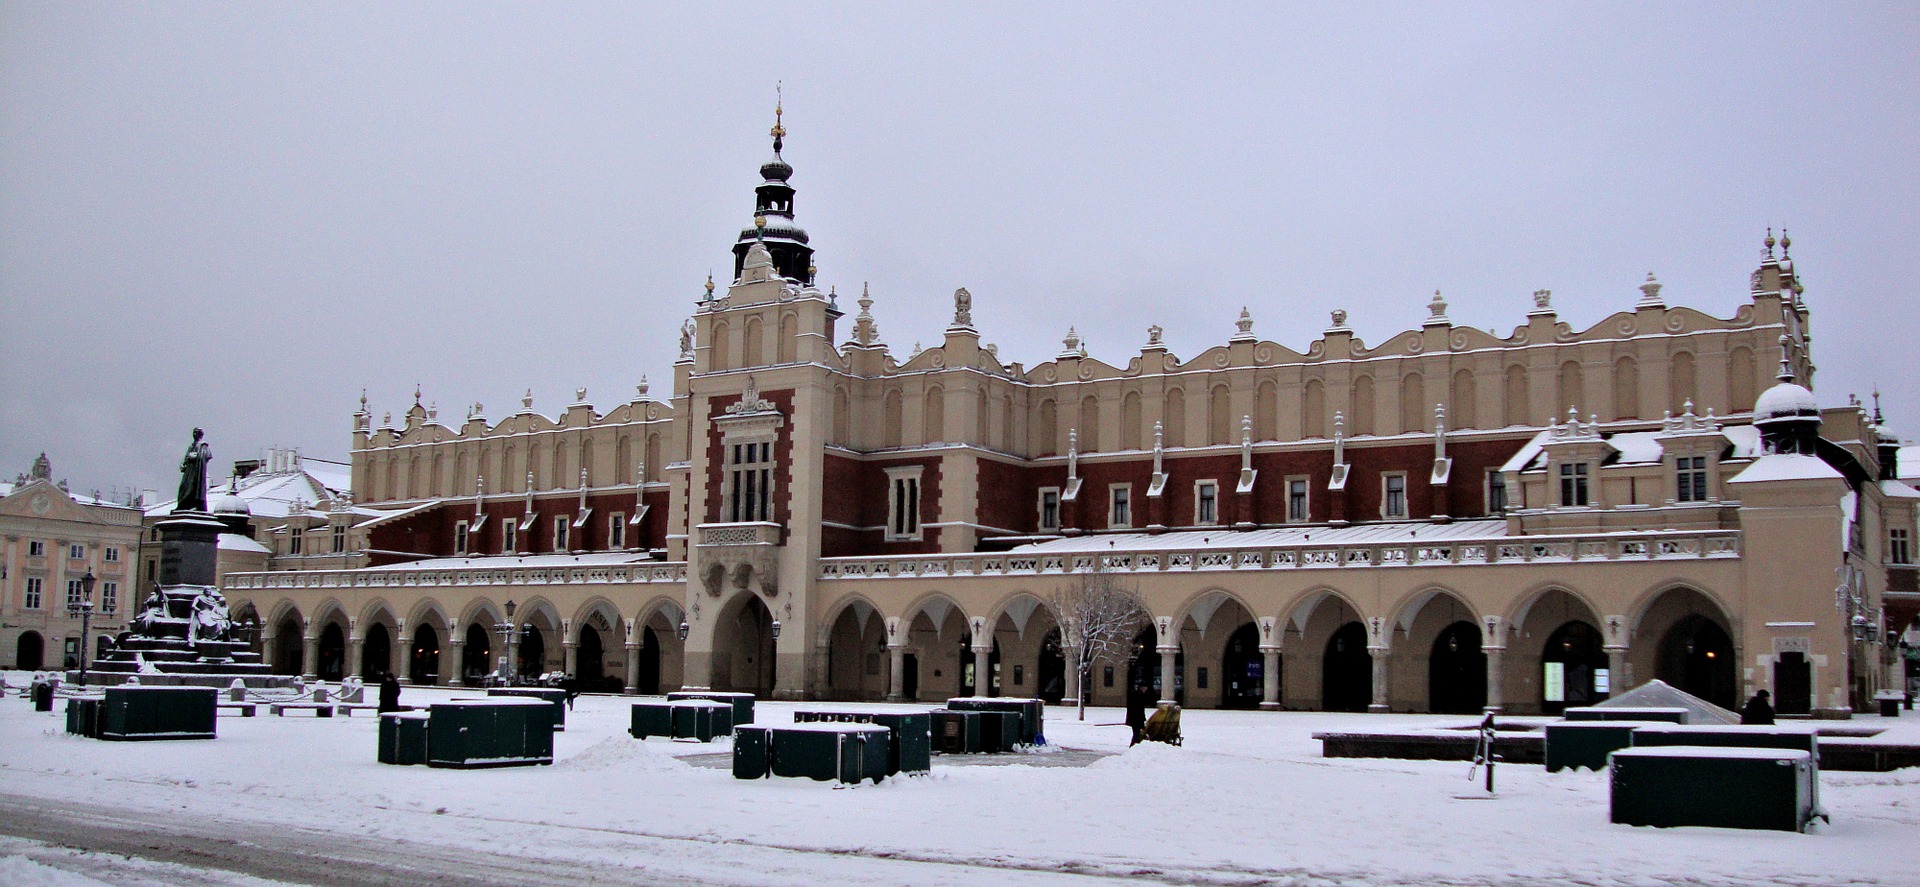 Krakow Centre